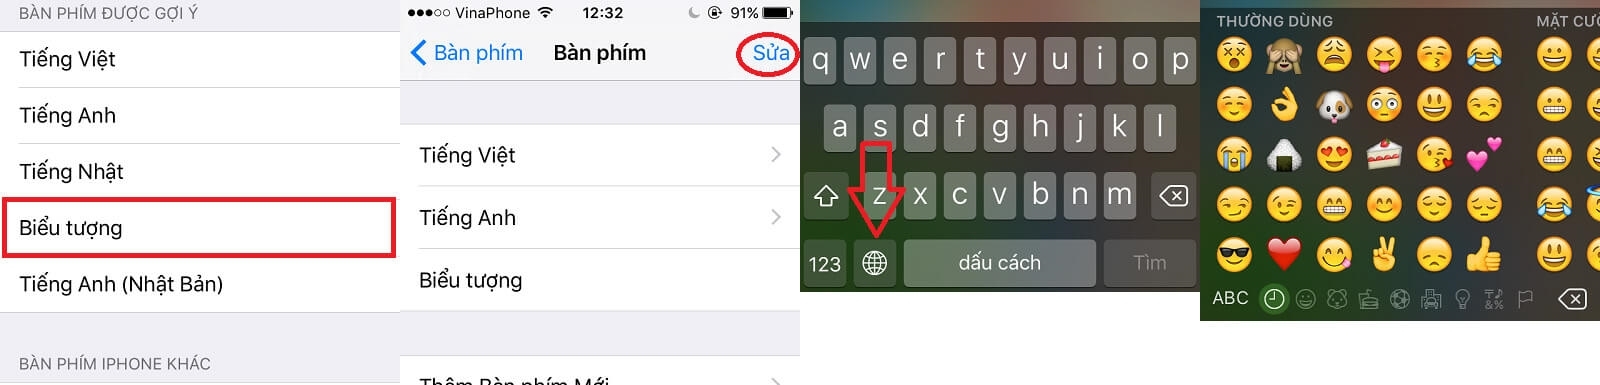 Cách thêm các biểu tượng vào bàn phím trên iPhone / iPad - Hình 2